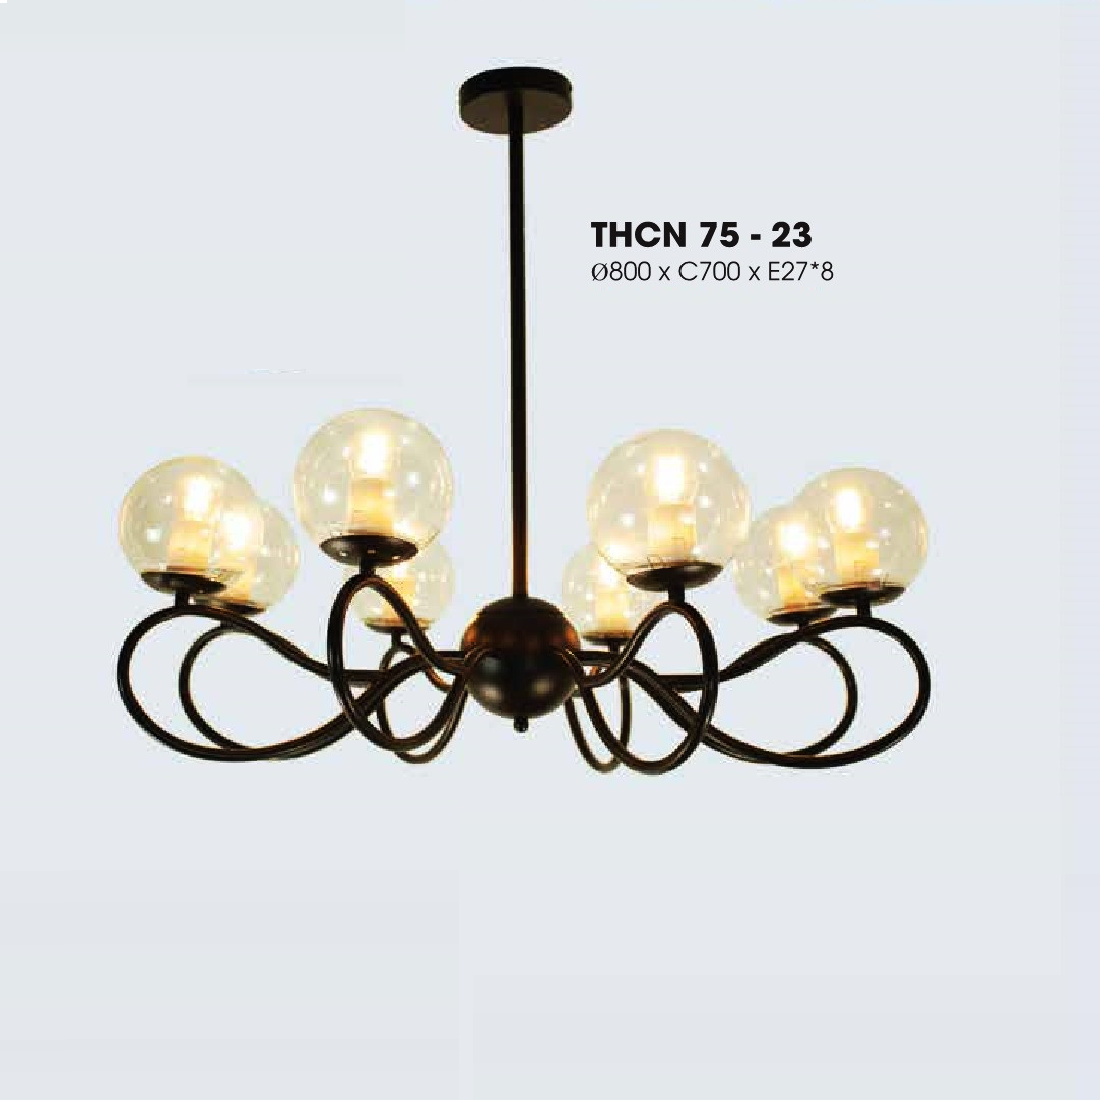 LH - THCN 75 - 23: Đèn chùm 8 tay chao quả bi - KT: Ø800mm x H700mm - Bóng đèn E27 x 8 bóng